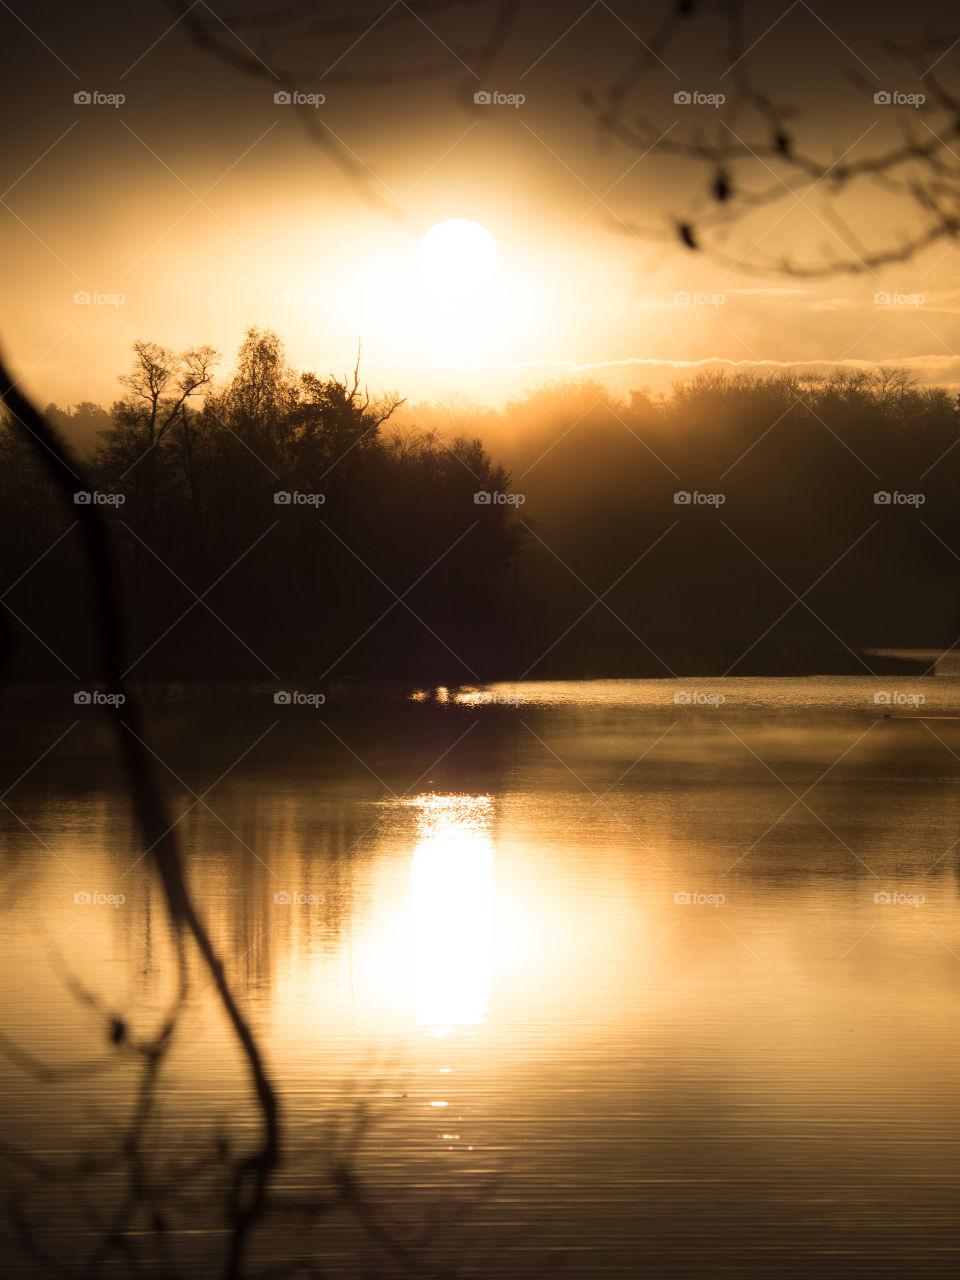 Foggy mornings on the lake shore